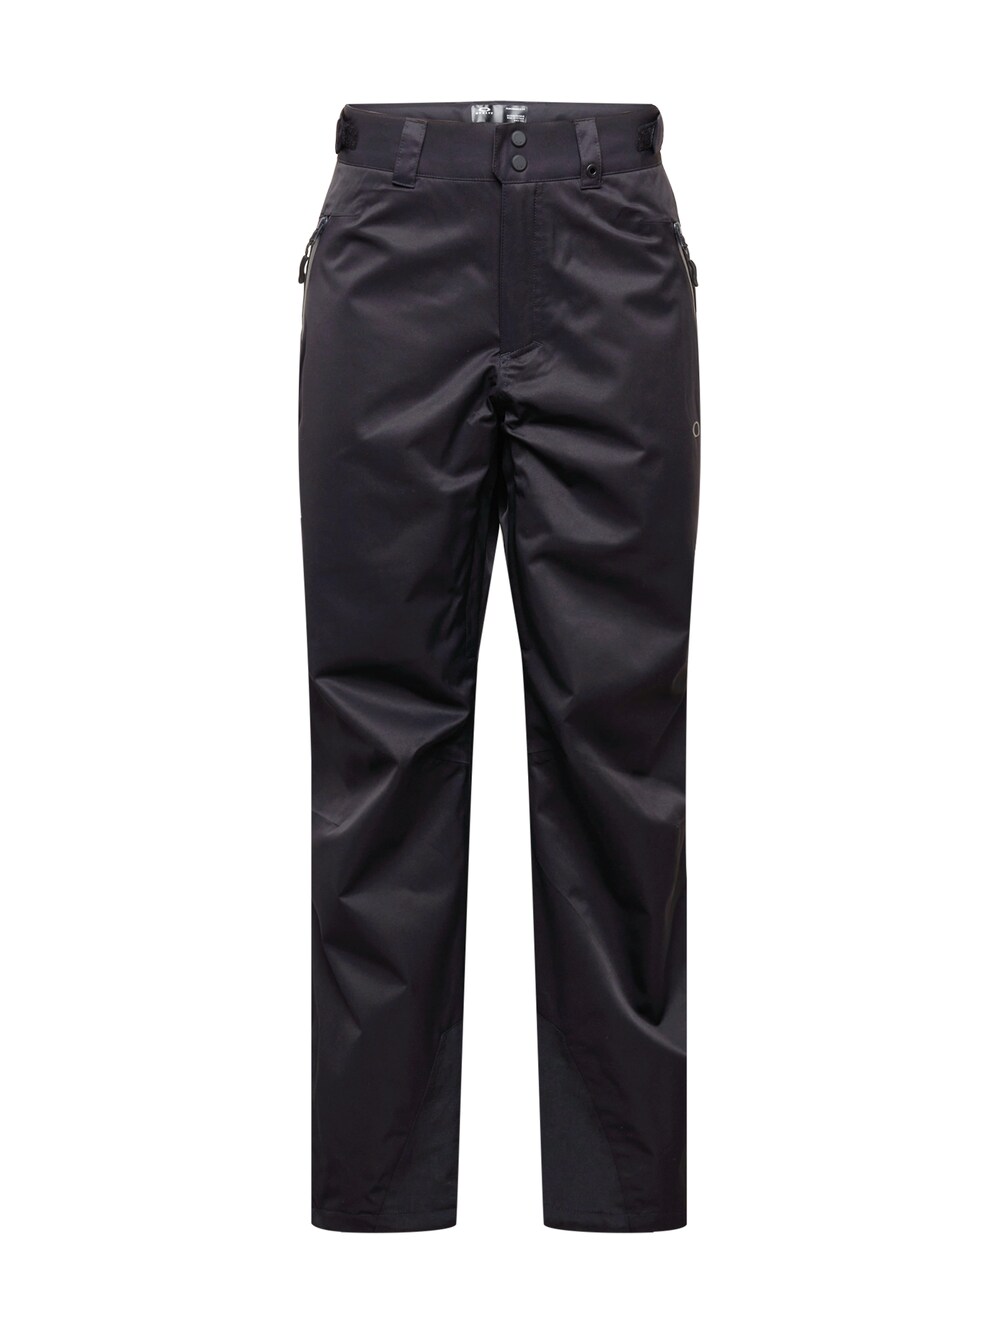 Обычные уличные брюки Oakley Crescent, черный обычные уличные брюки oakley crescent черный